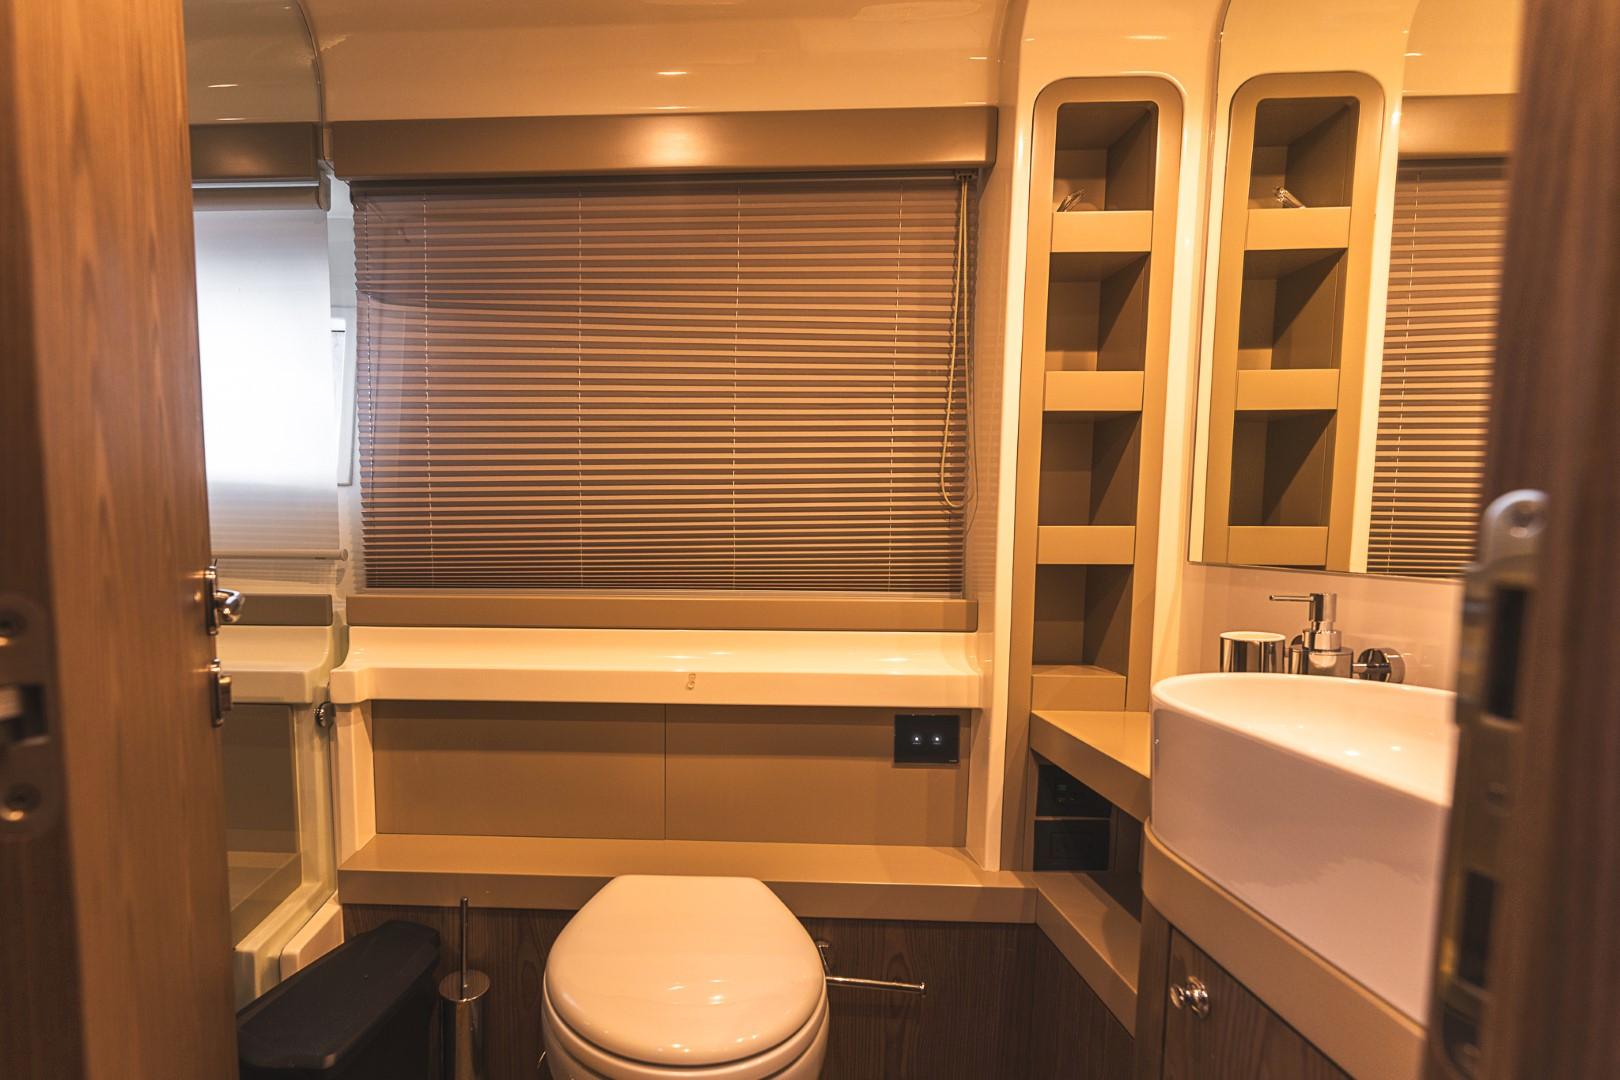 2018 Ferretti Yachts 550 KAMAKI